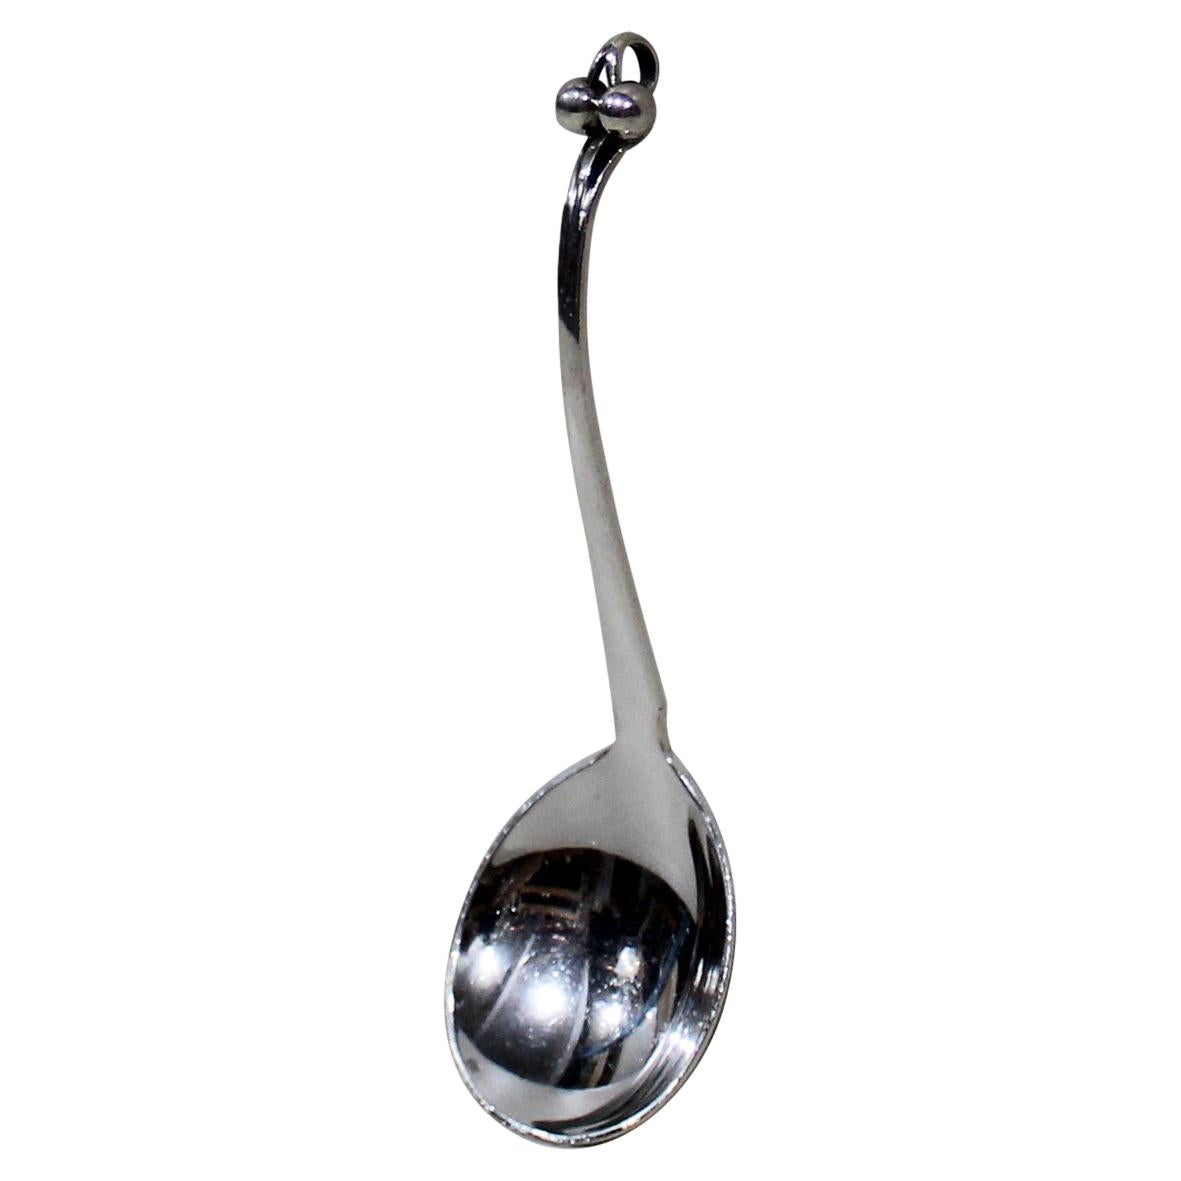 Georg Jensen Sterling Silver Ornamental Serving Spoon